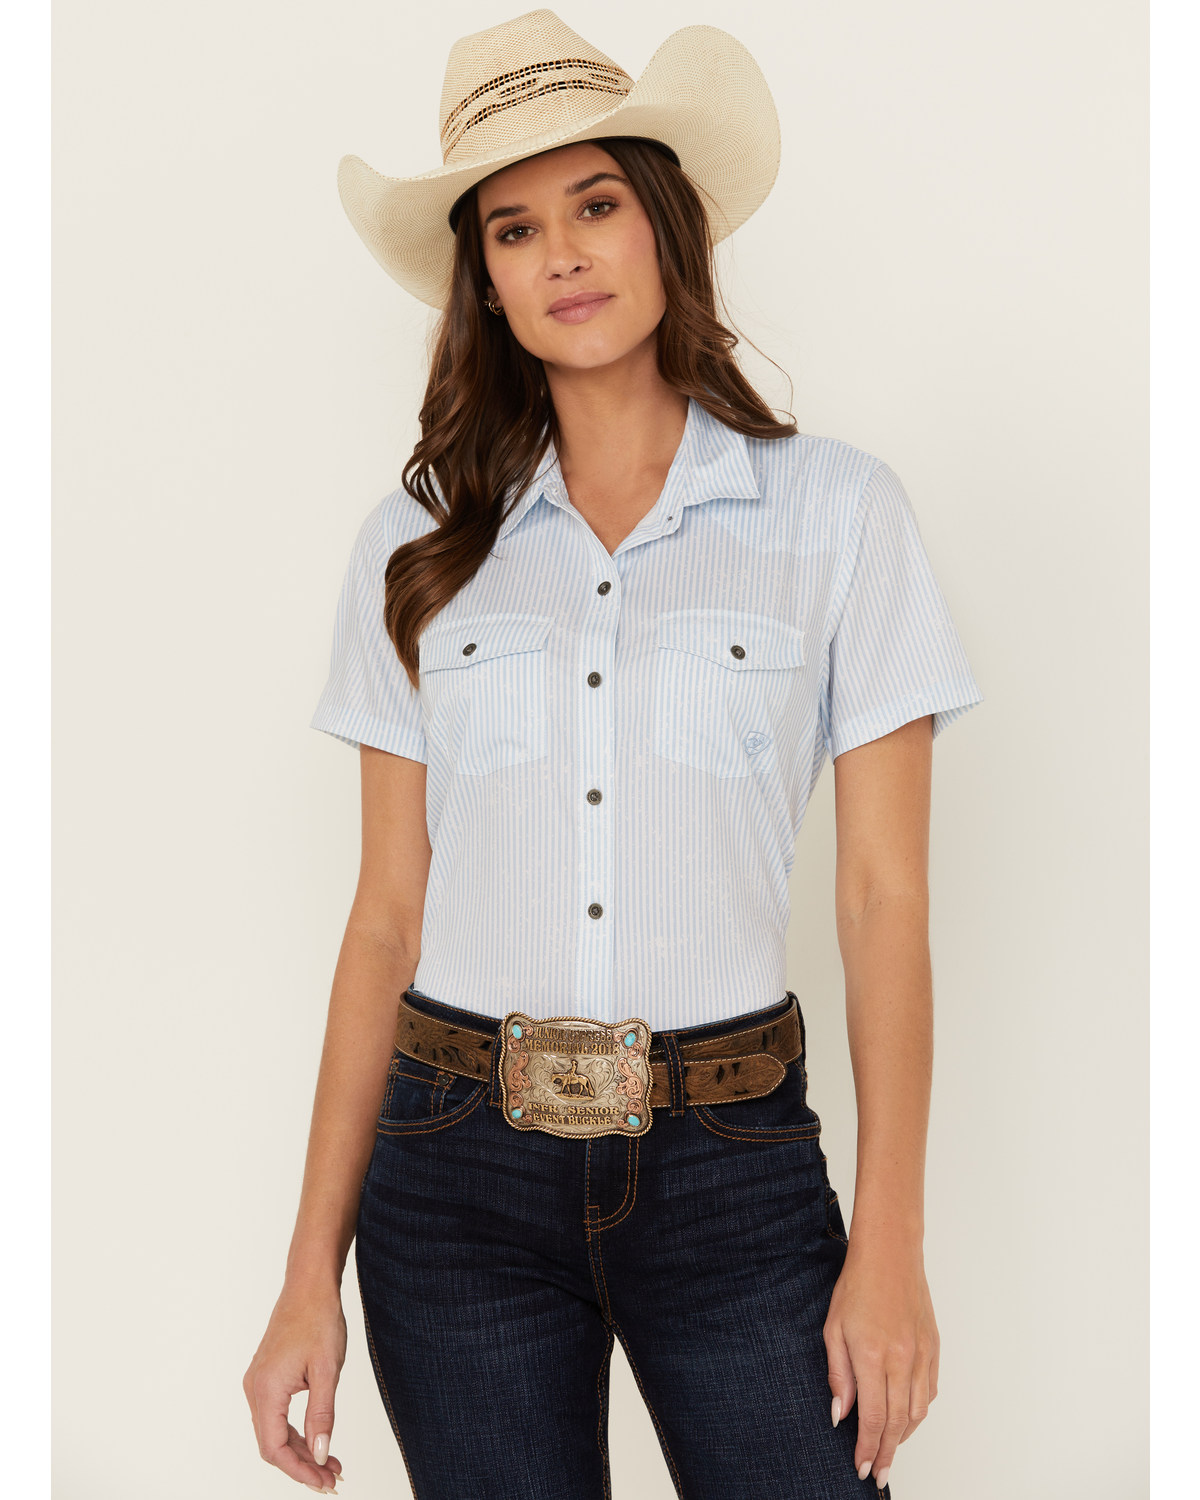 Ariat Women's Striped VentTek Short Sleeve Button-Down Western Shirt